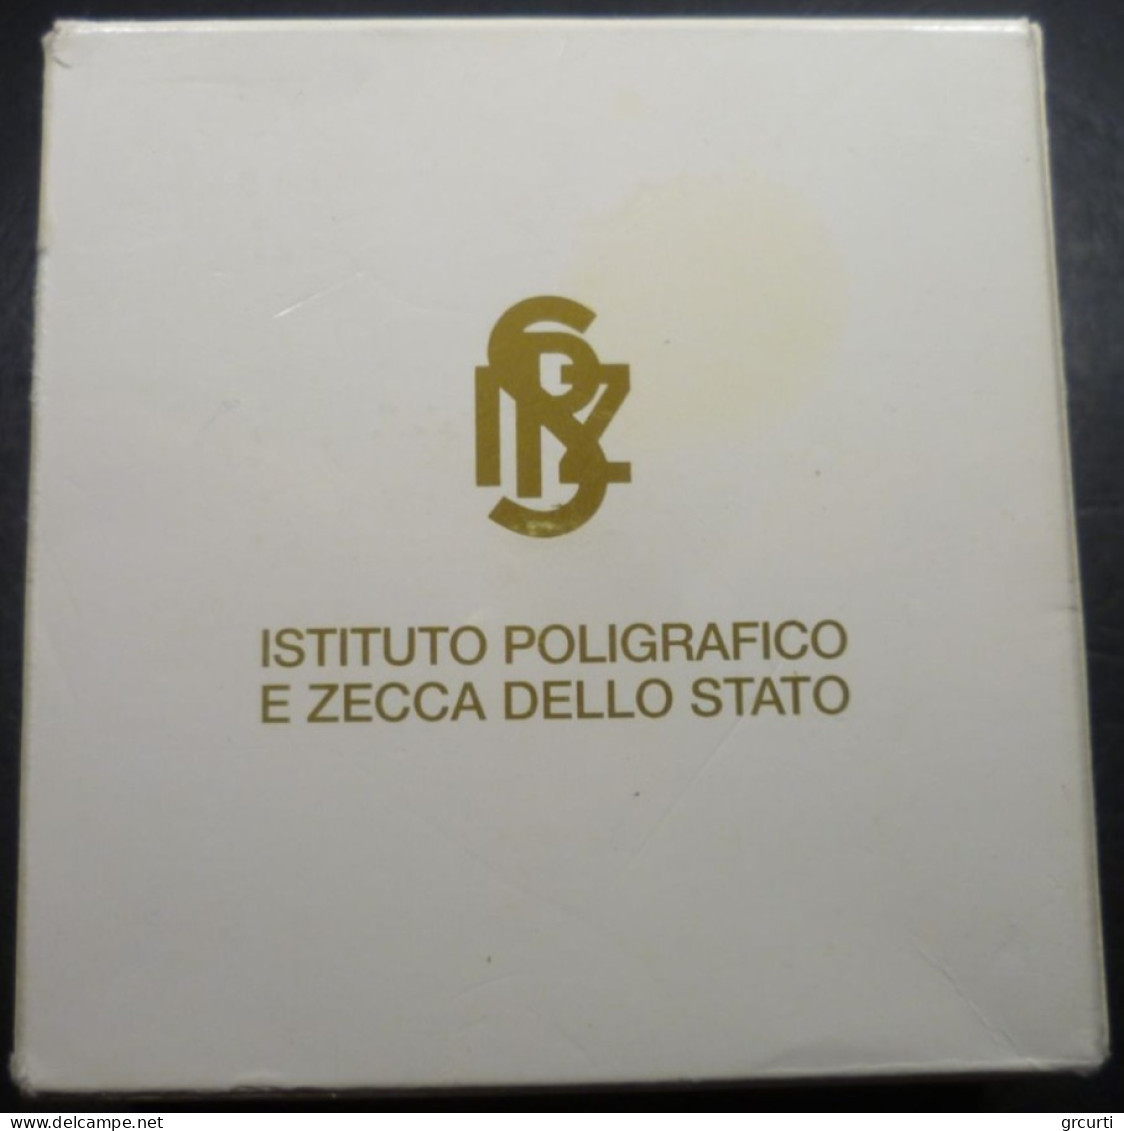 Italia - 5 Ecu 1995 - Medaglia commemorativa in argento